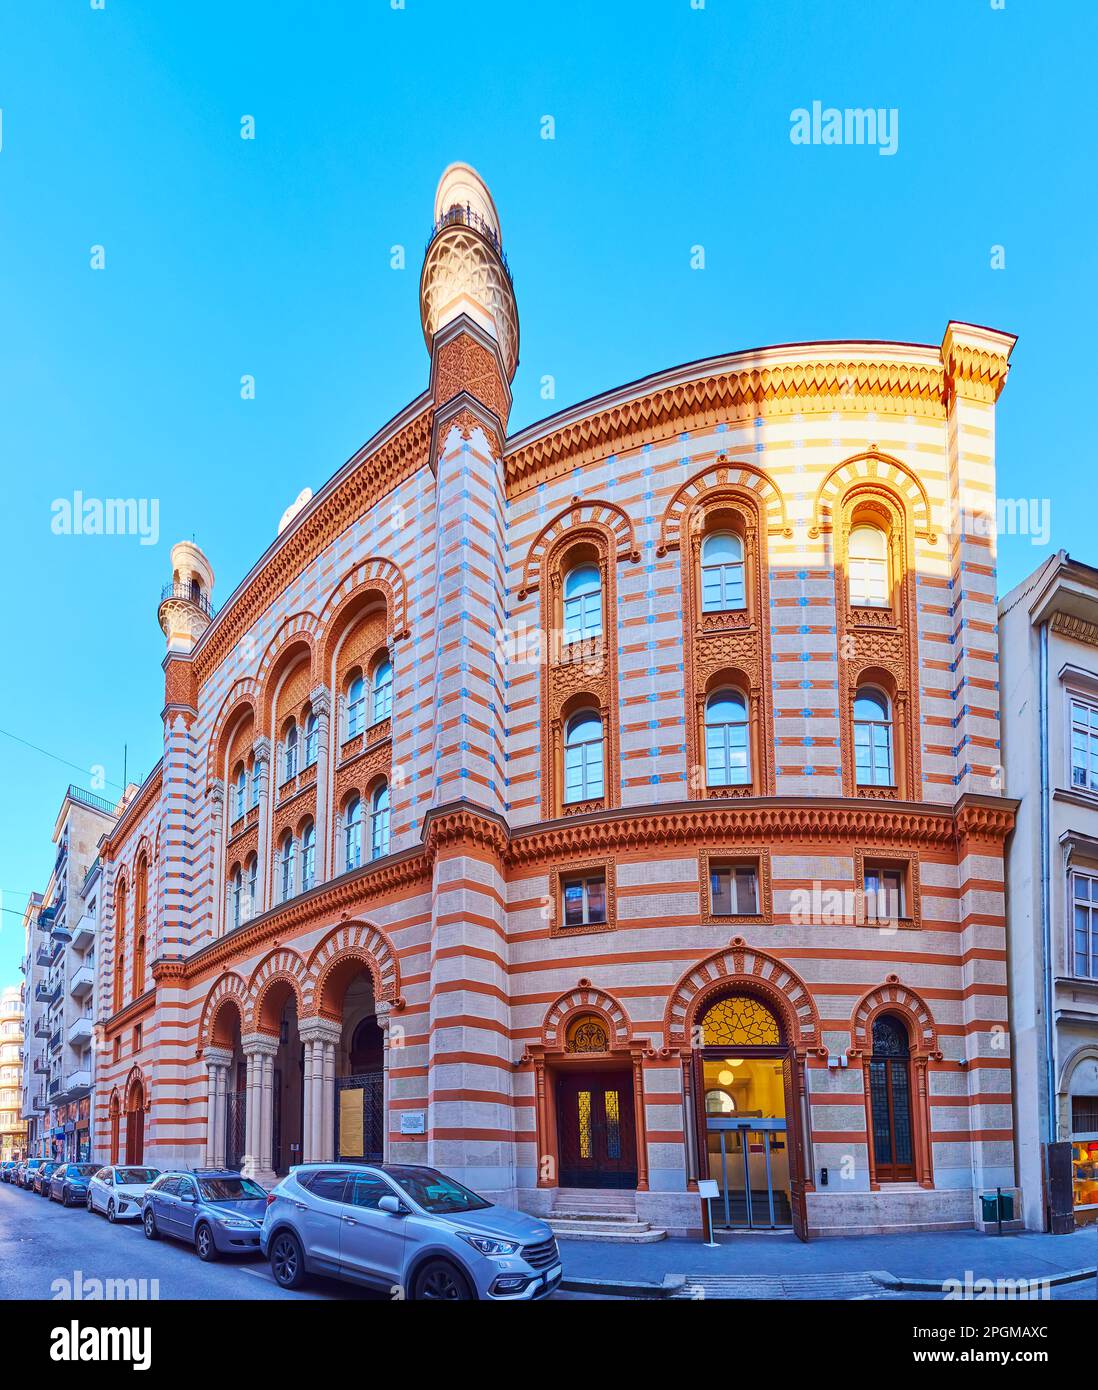 La splendide façade de la synagogue historique de la rue Rumbach, décorée dans un style mauresque de style révial, Belvaros, Budapest, Hongrie Banque D'Images